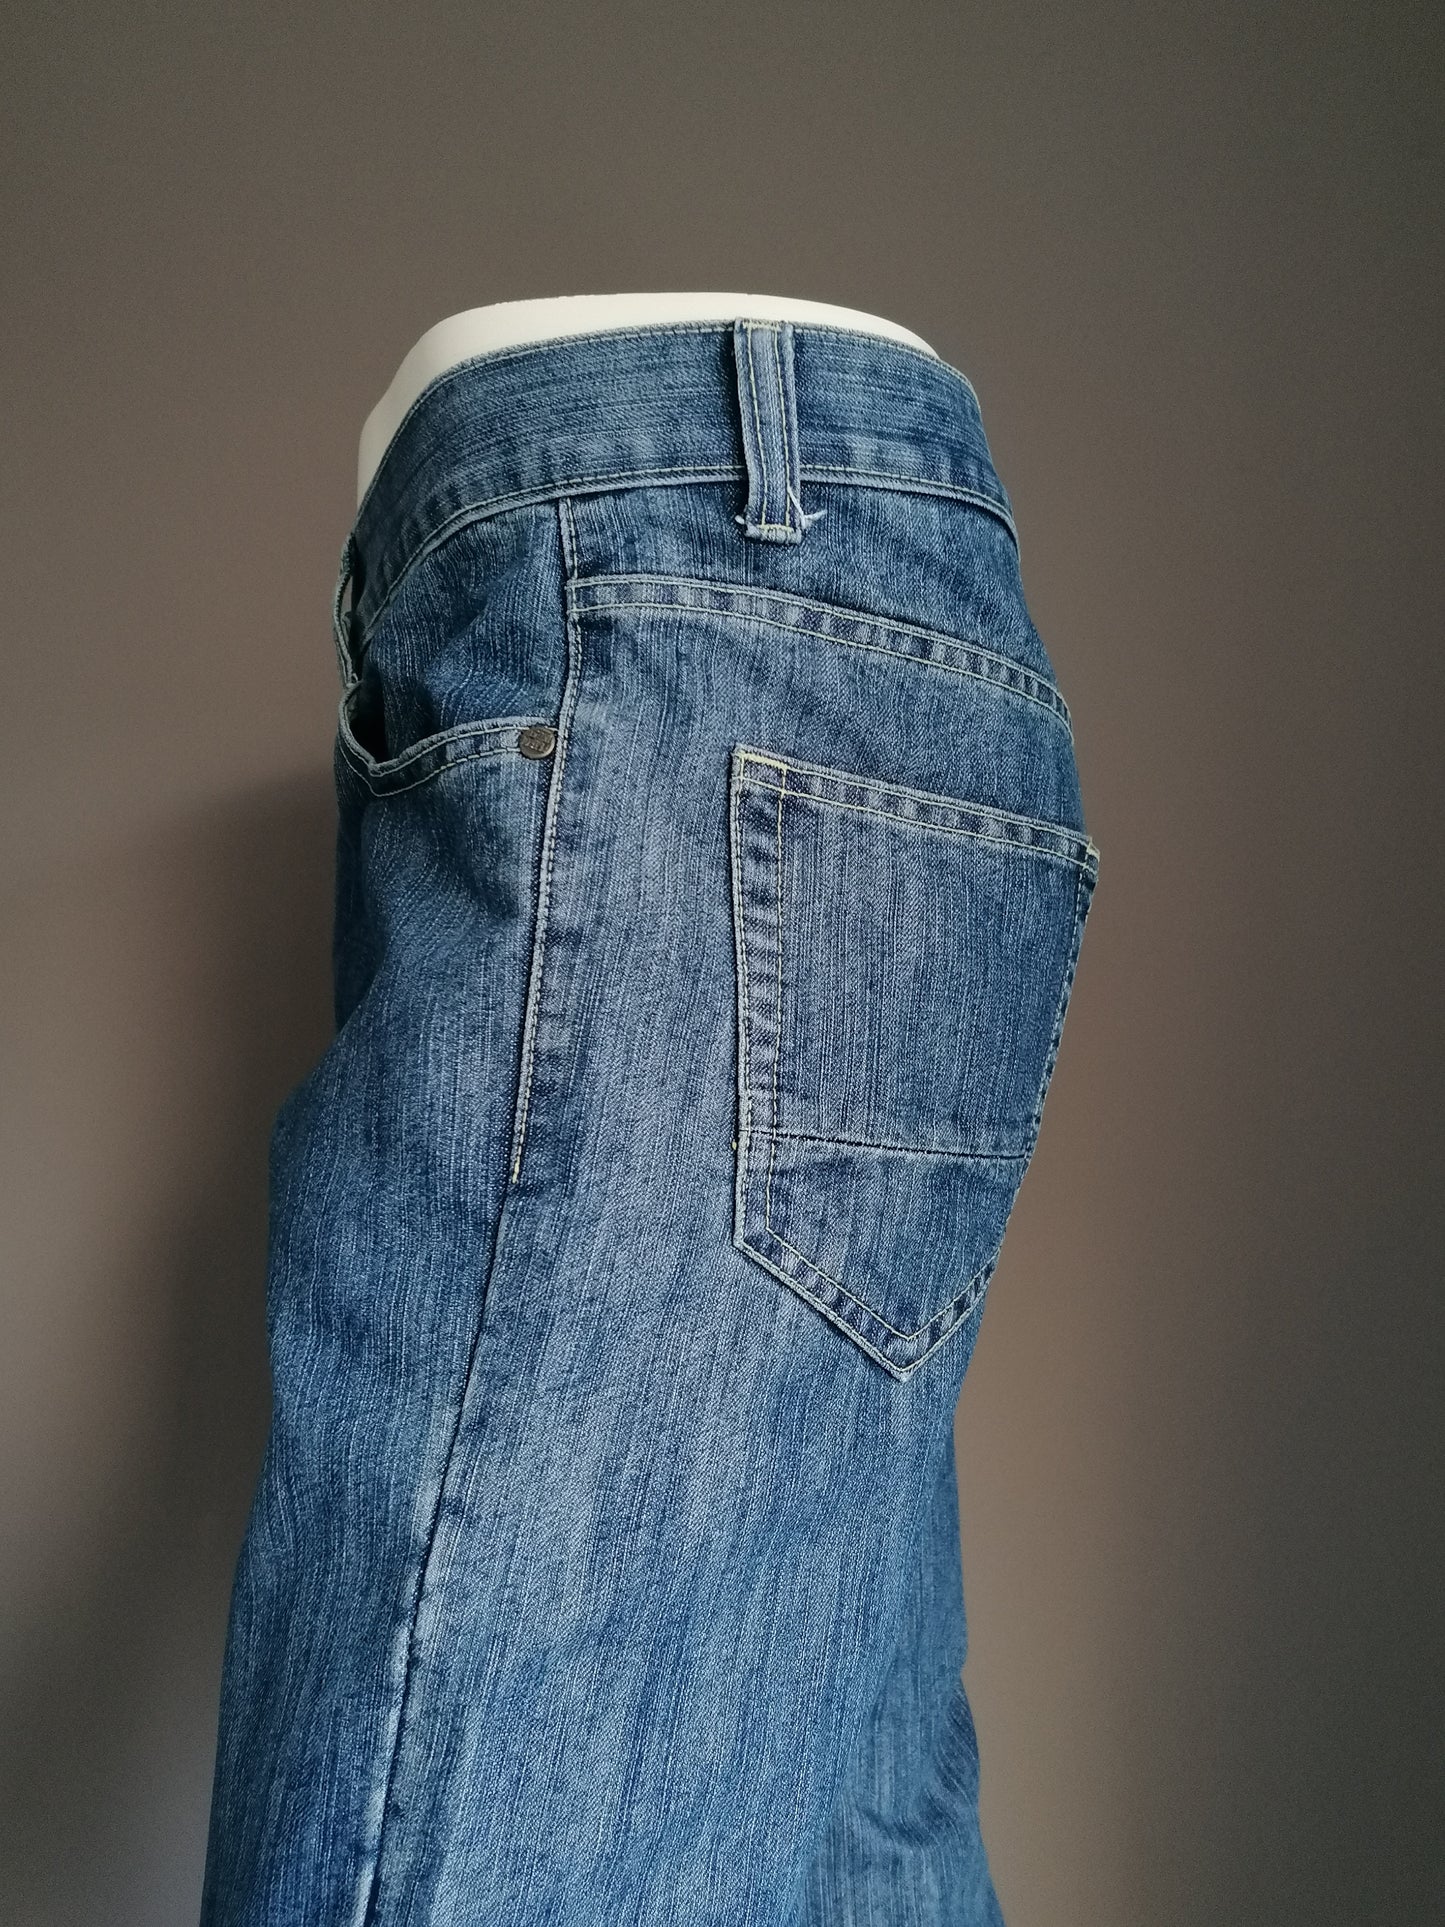 Jeans a benzina. Blu colorato. Taglia W32 - 30. I pantaloni sono stati abbreviati.